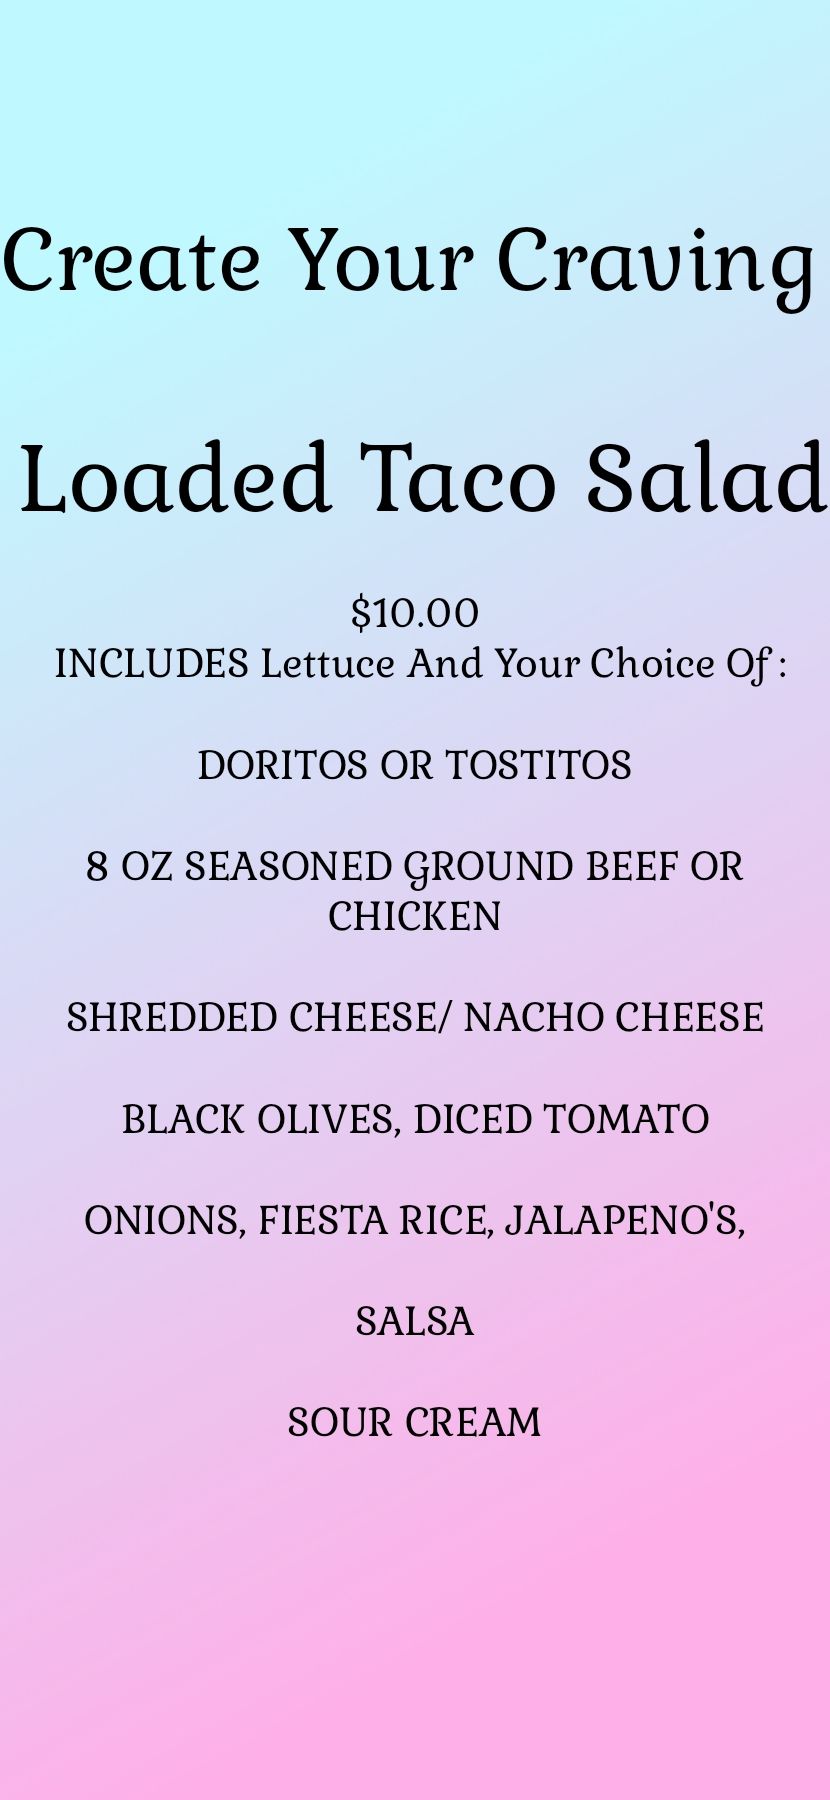 Loaded Taco Salad Walk-In